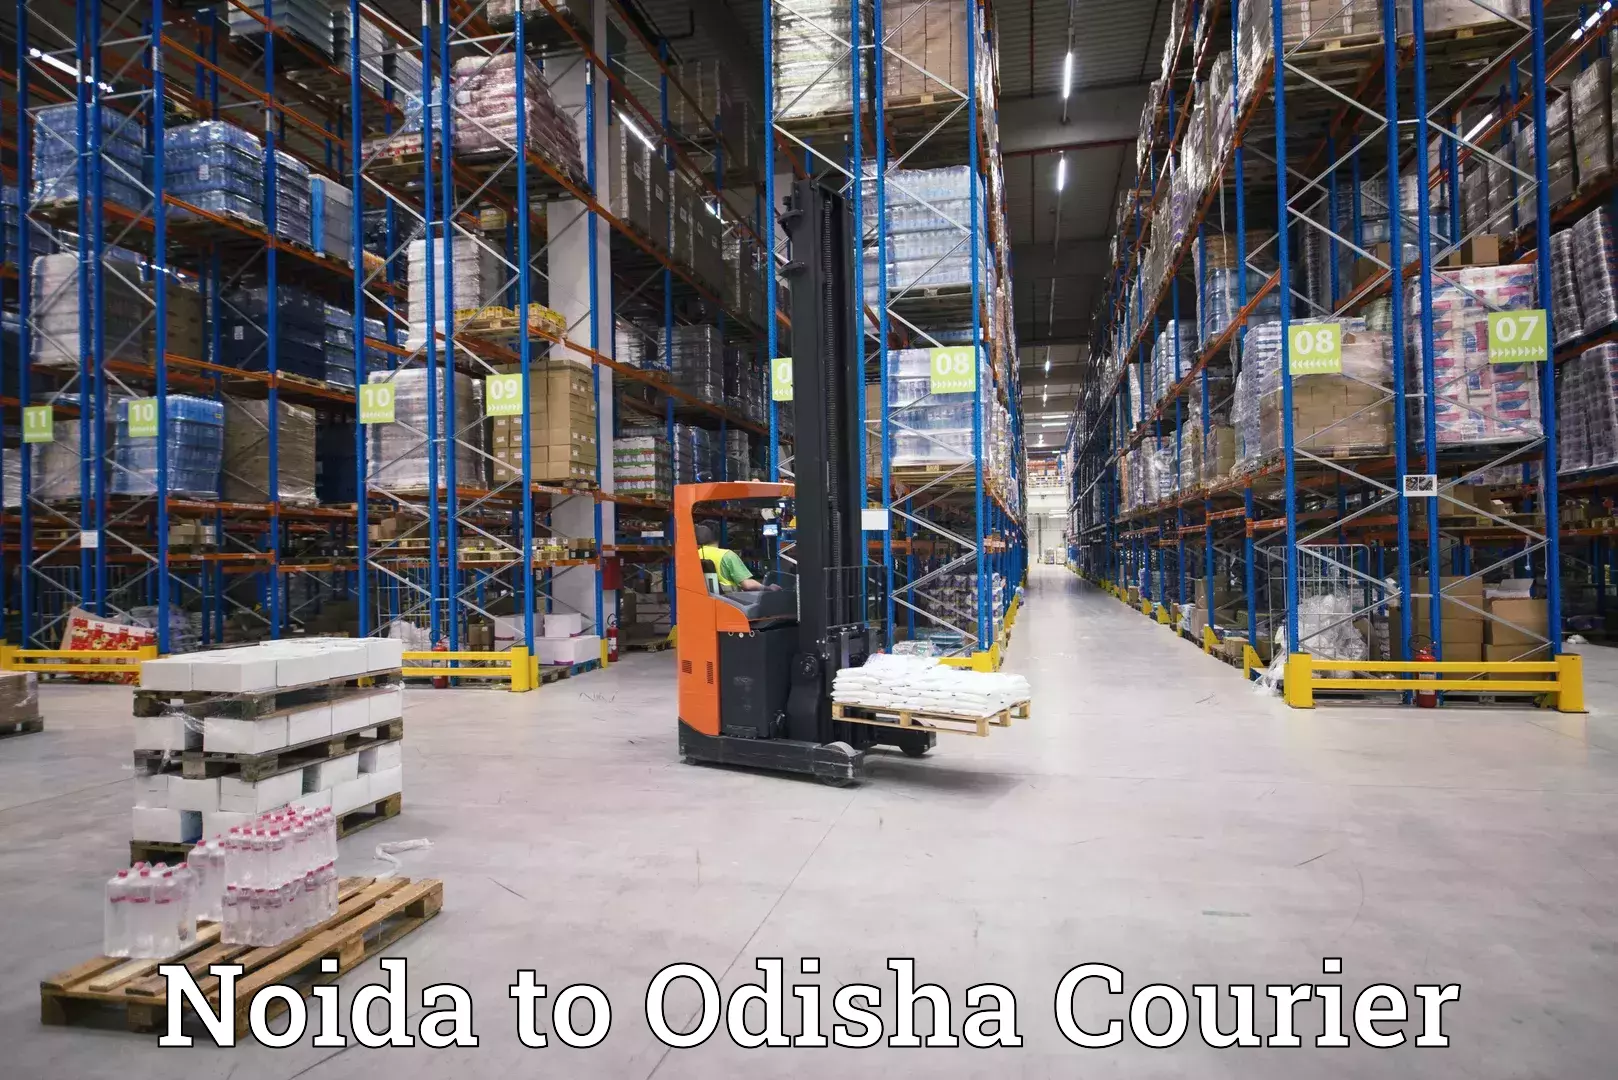 High-priority parcel service Noida to Sohela